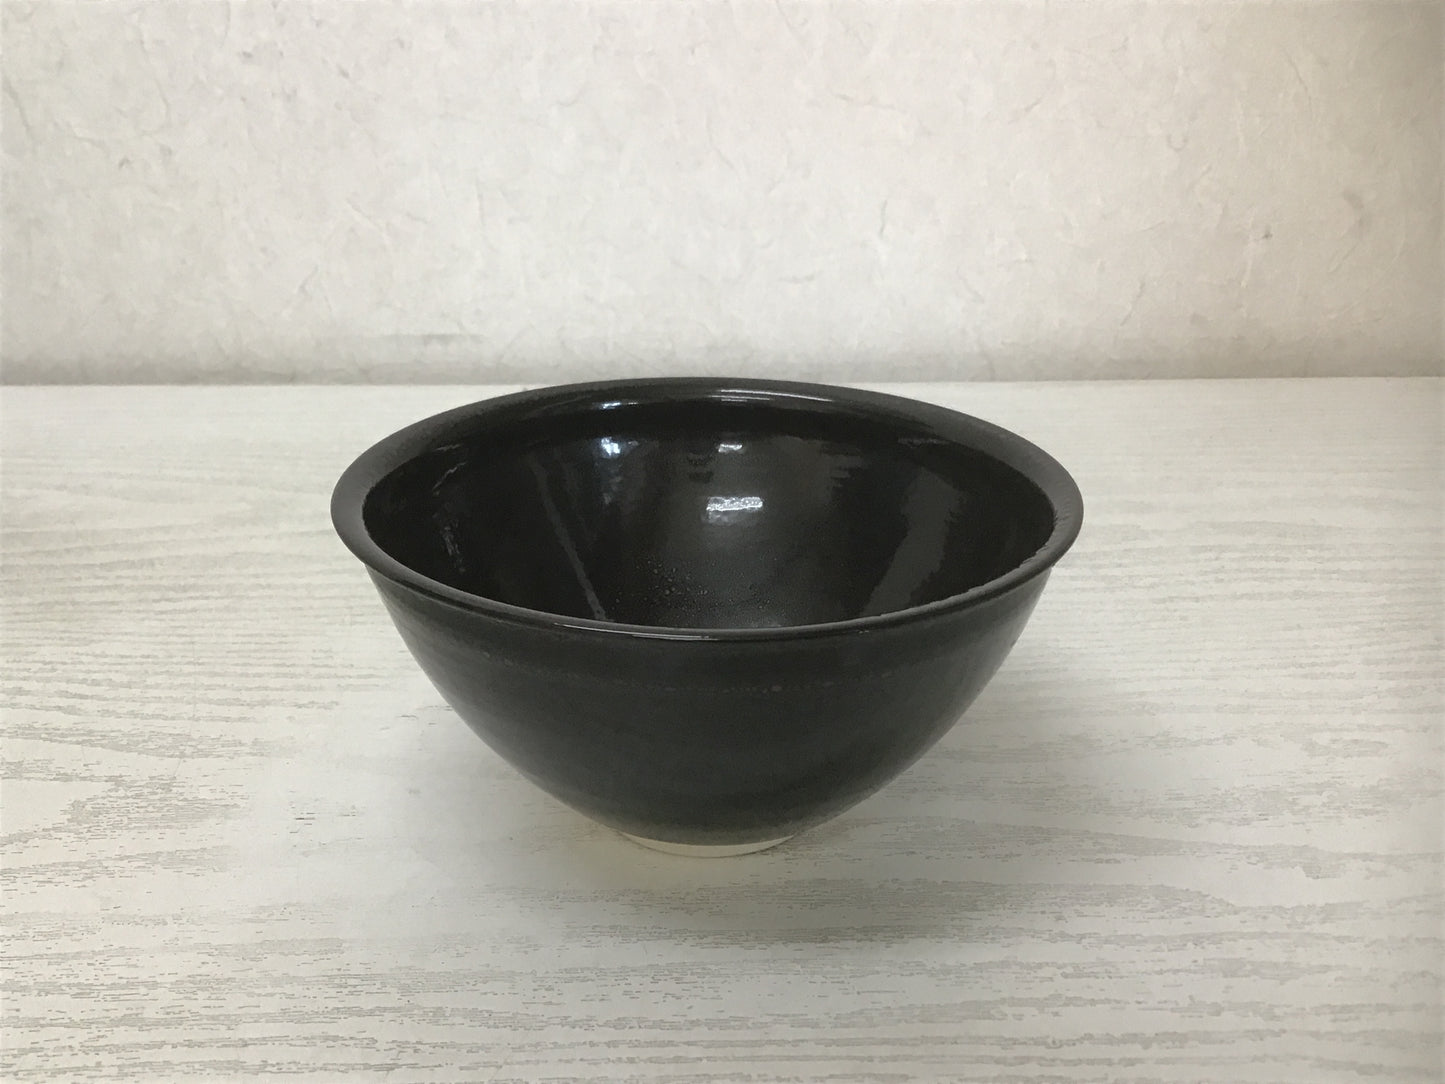 Y1432 CHAWAN Seto-ware Tenmoku signed box Japanese bowl pottery tea ceremony